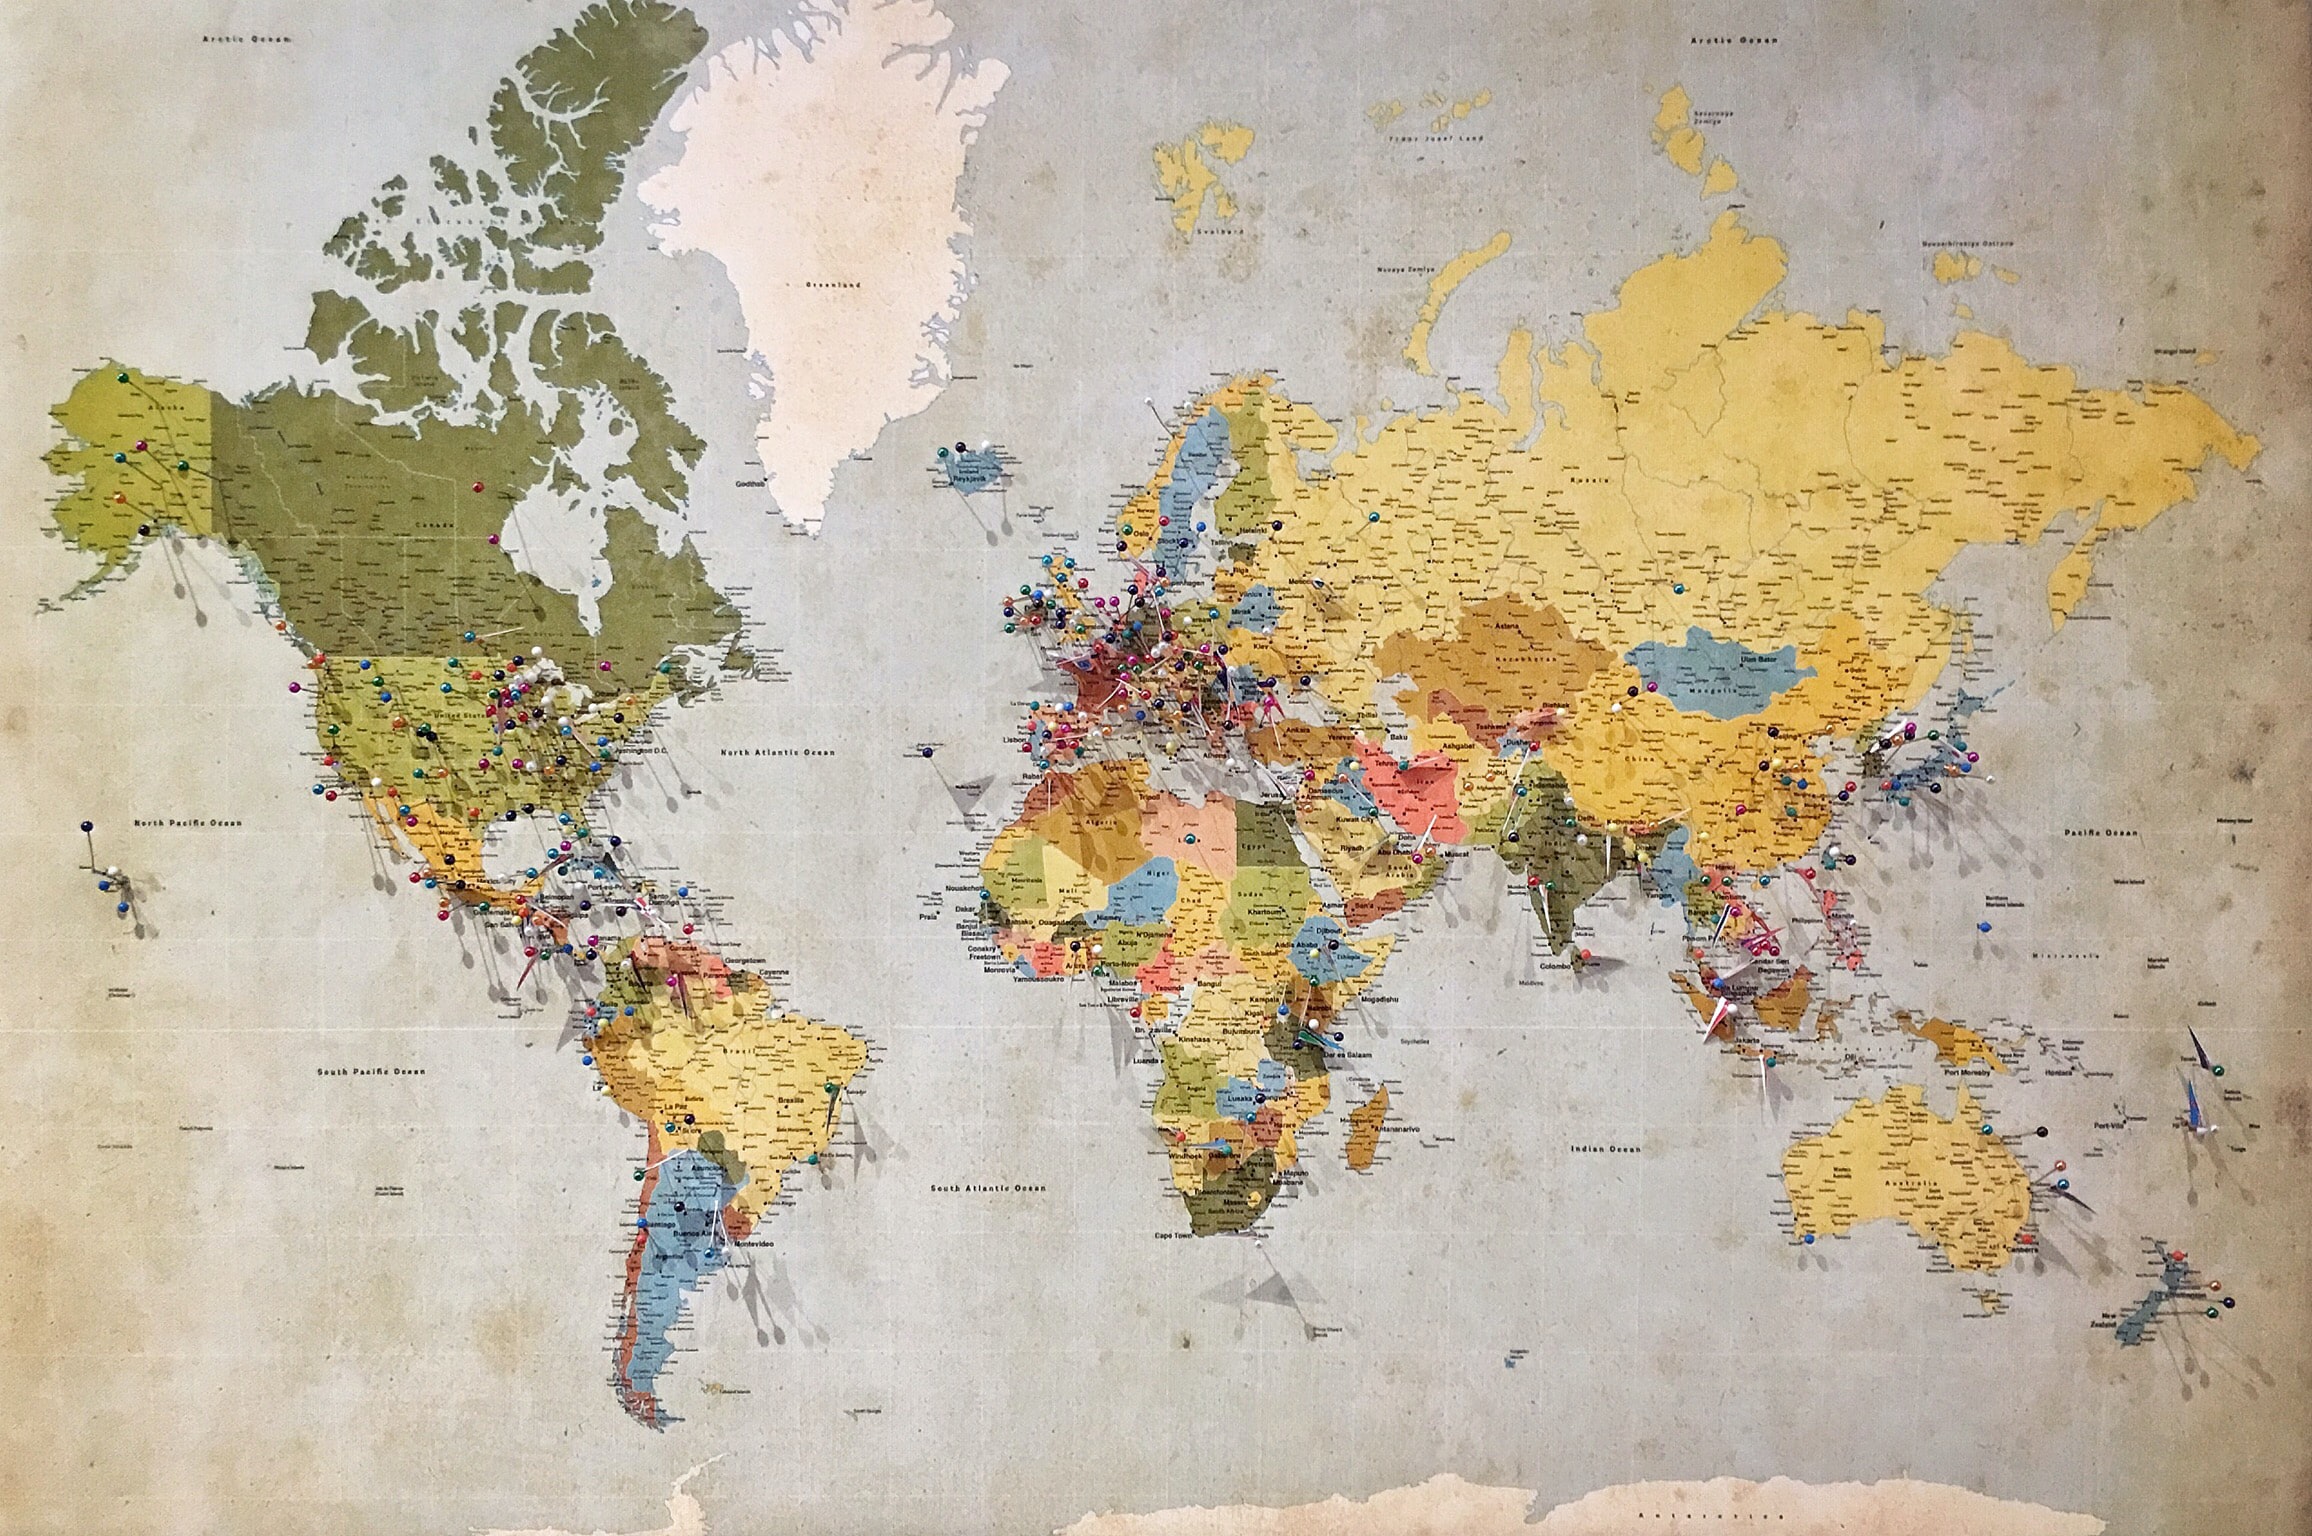 Mapa sveta s vyznačenými miestami, ktoré som navštívil alebo navštívim